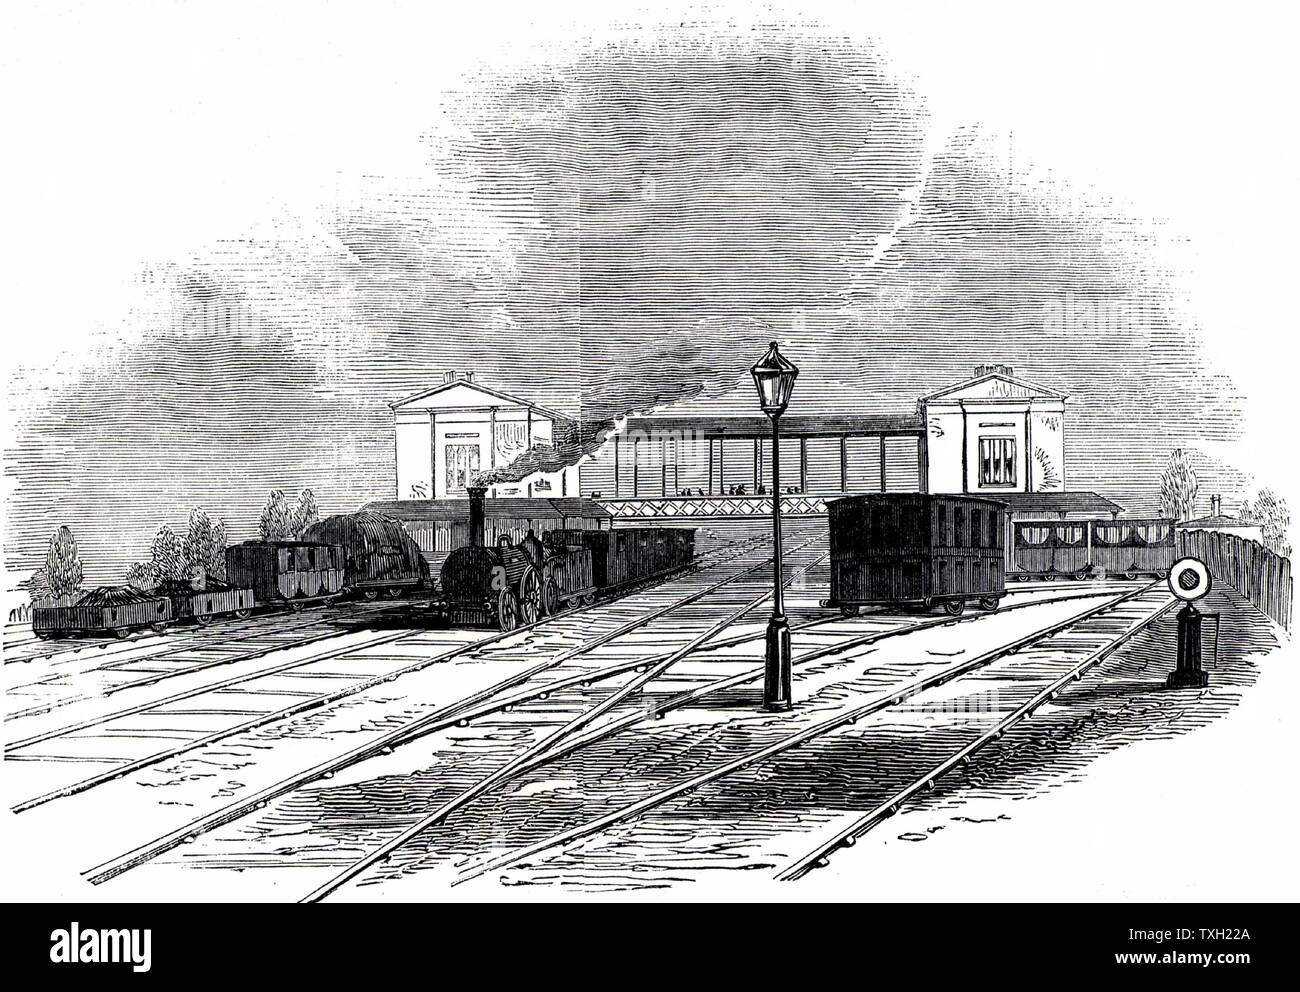 Stazione di Swindon su Great Western Railway, 1845. Isambard Kingdom Brunel (1806-1859) favorito il vasto calibro 7ft 1/4poll (2.2m) e progettato il grande Westerrn Railway di conseguenza. Tuttavia, nell'indicatore Act del 1846 ha dichiarato che in futuro tutti i binario ferroviario dovrebbe essere di standard 4ft 8 1/2poll (1,44 m). L'indicatore introdotto da George Stephenson (1781-1848) sul Liverpool e Manchester ferroviaria. Non è stato fino al 1892 che l'ultimo ampio calibro via è stato sollevato. Da 'l'Illustrated London News'. (Londra, 18 ottobre 1845). Foto Stock